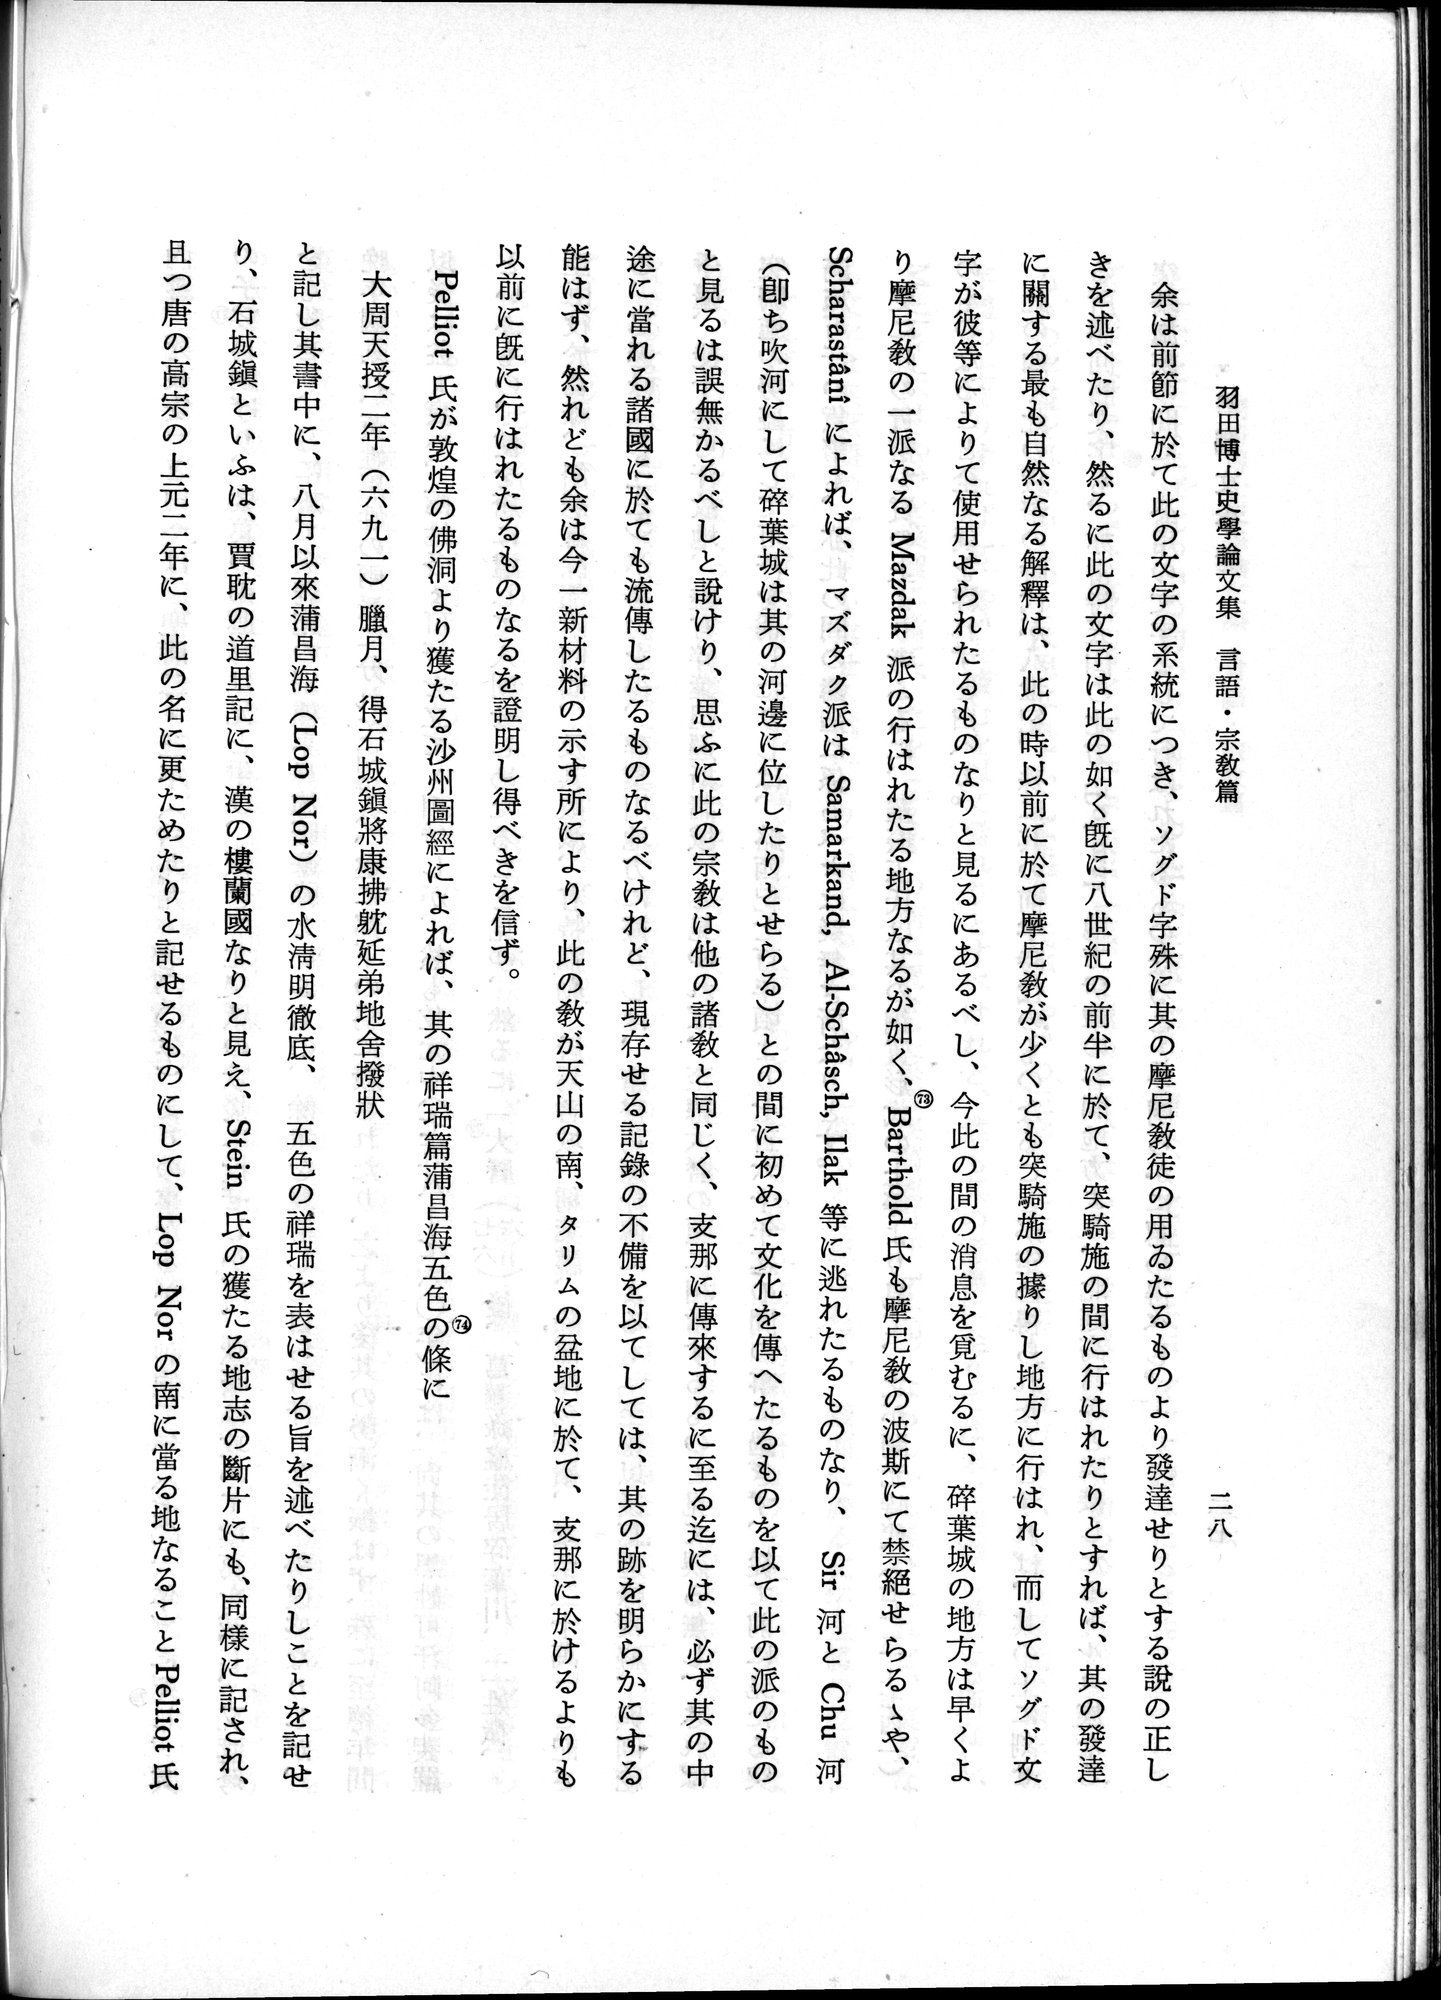 羽田博士史学論文集 : vol.2 / Page 78 (Grayscale High Resolution Image)